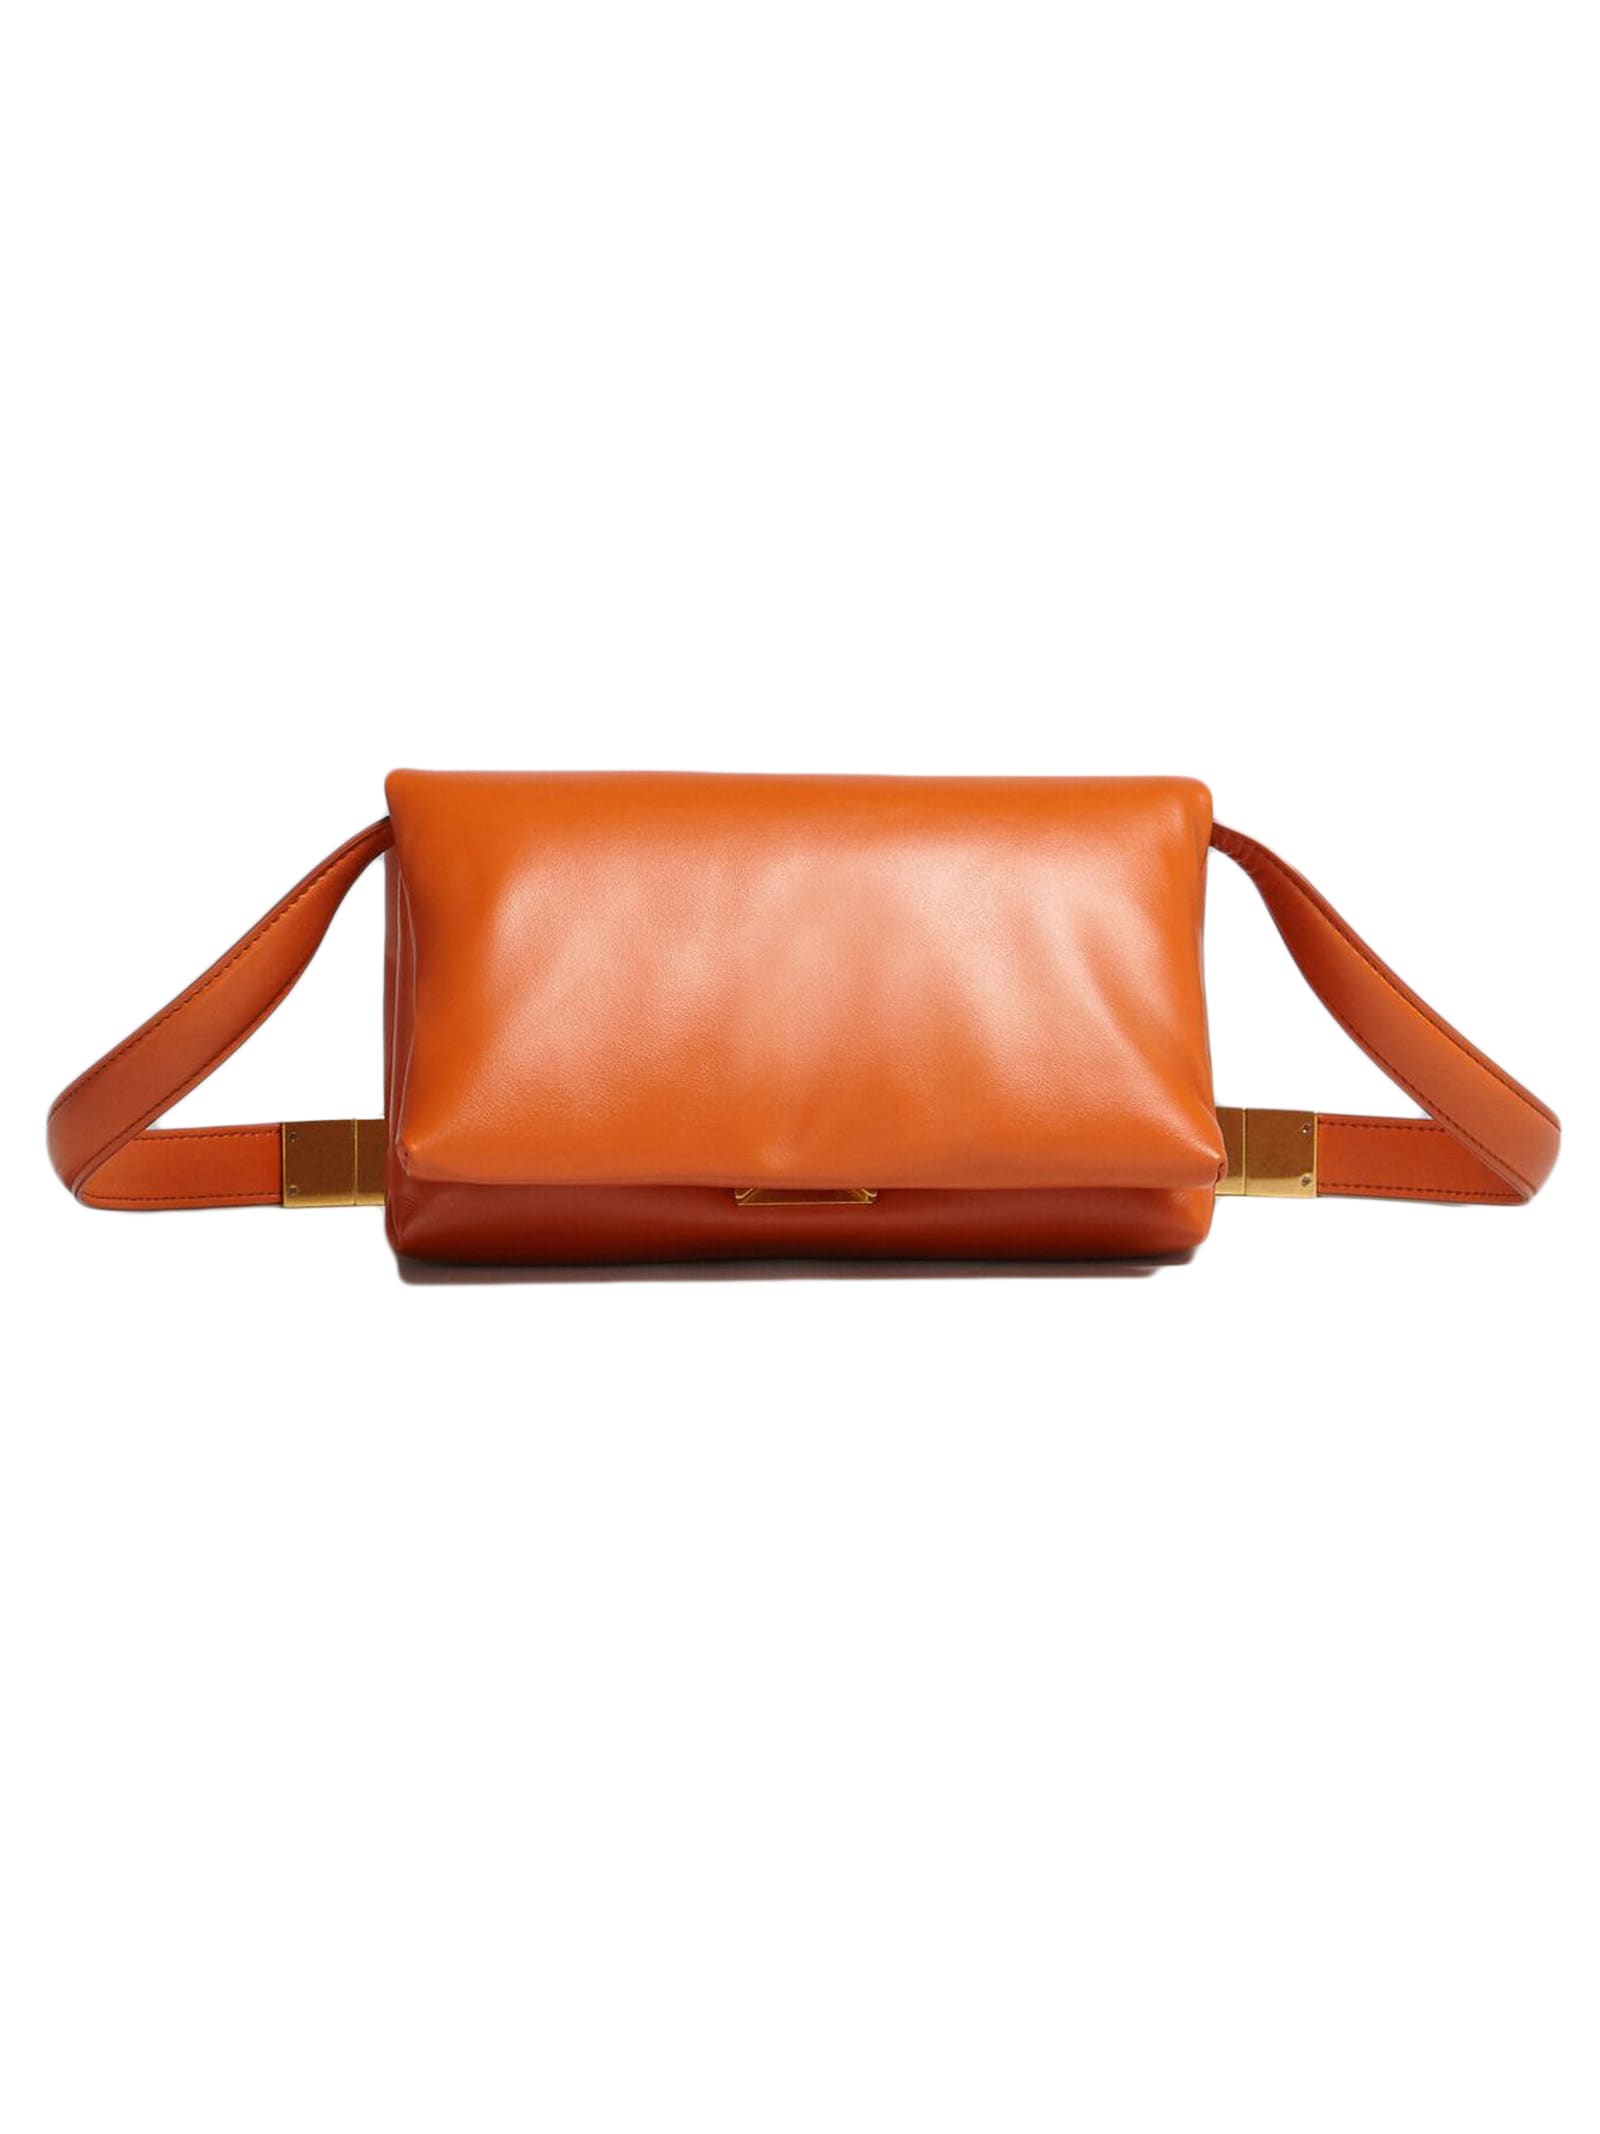 Marni Orange Calfskin Prisma Bag